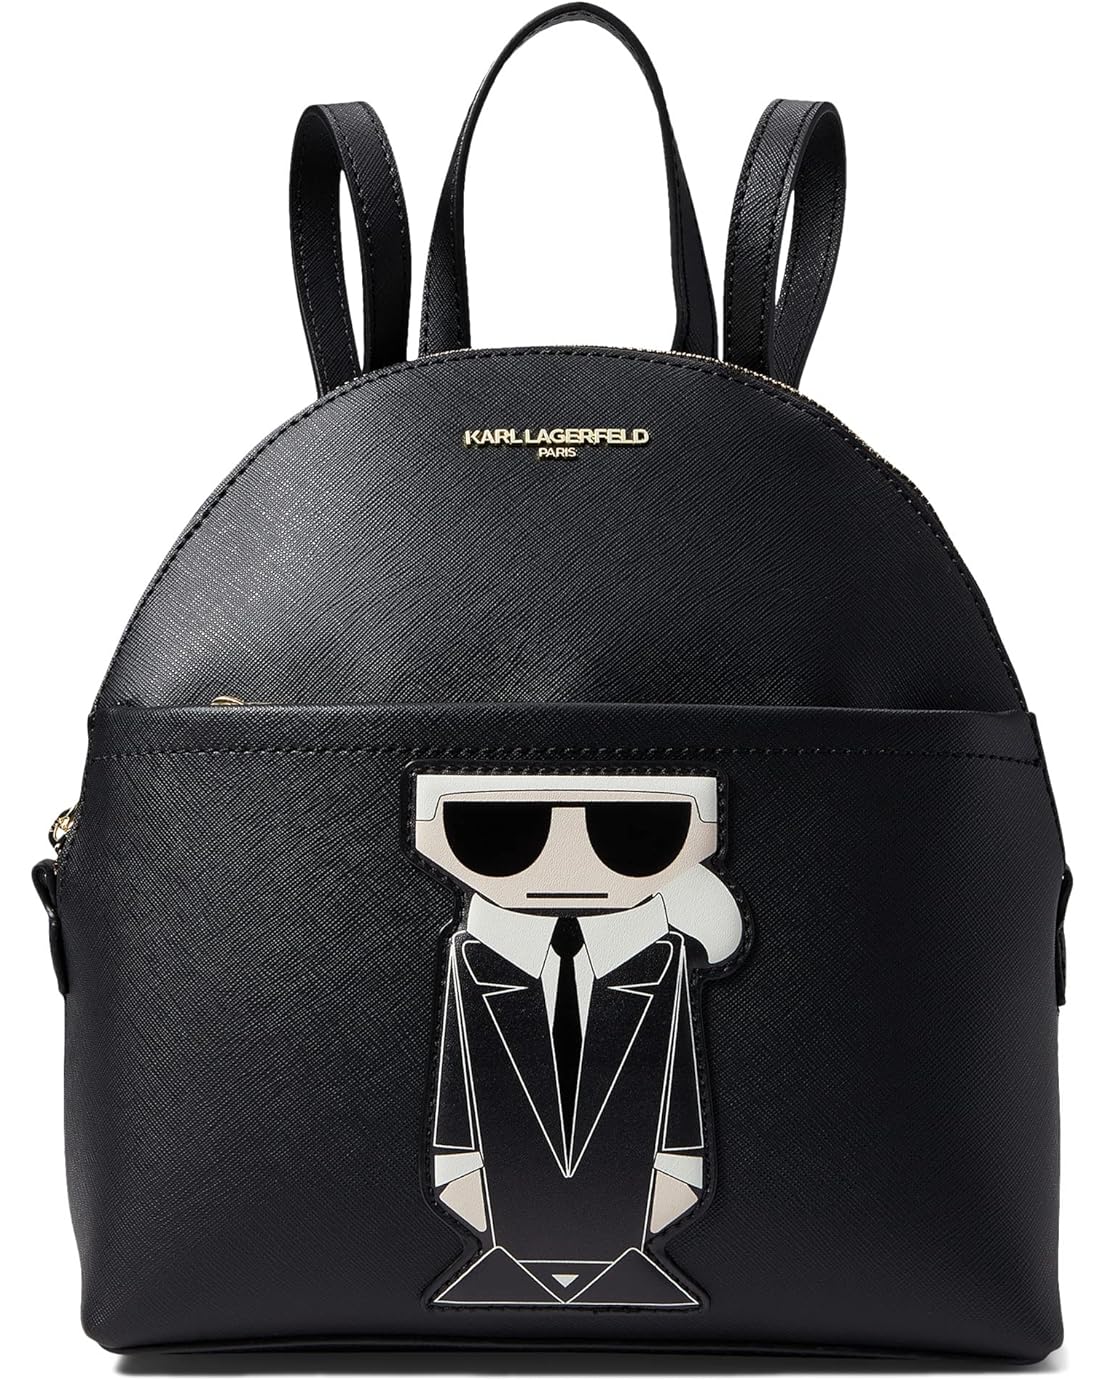 Karl Lagerfeld Paris Maybelle Backpack